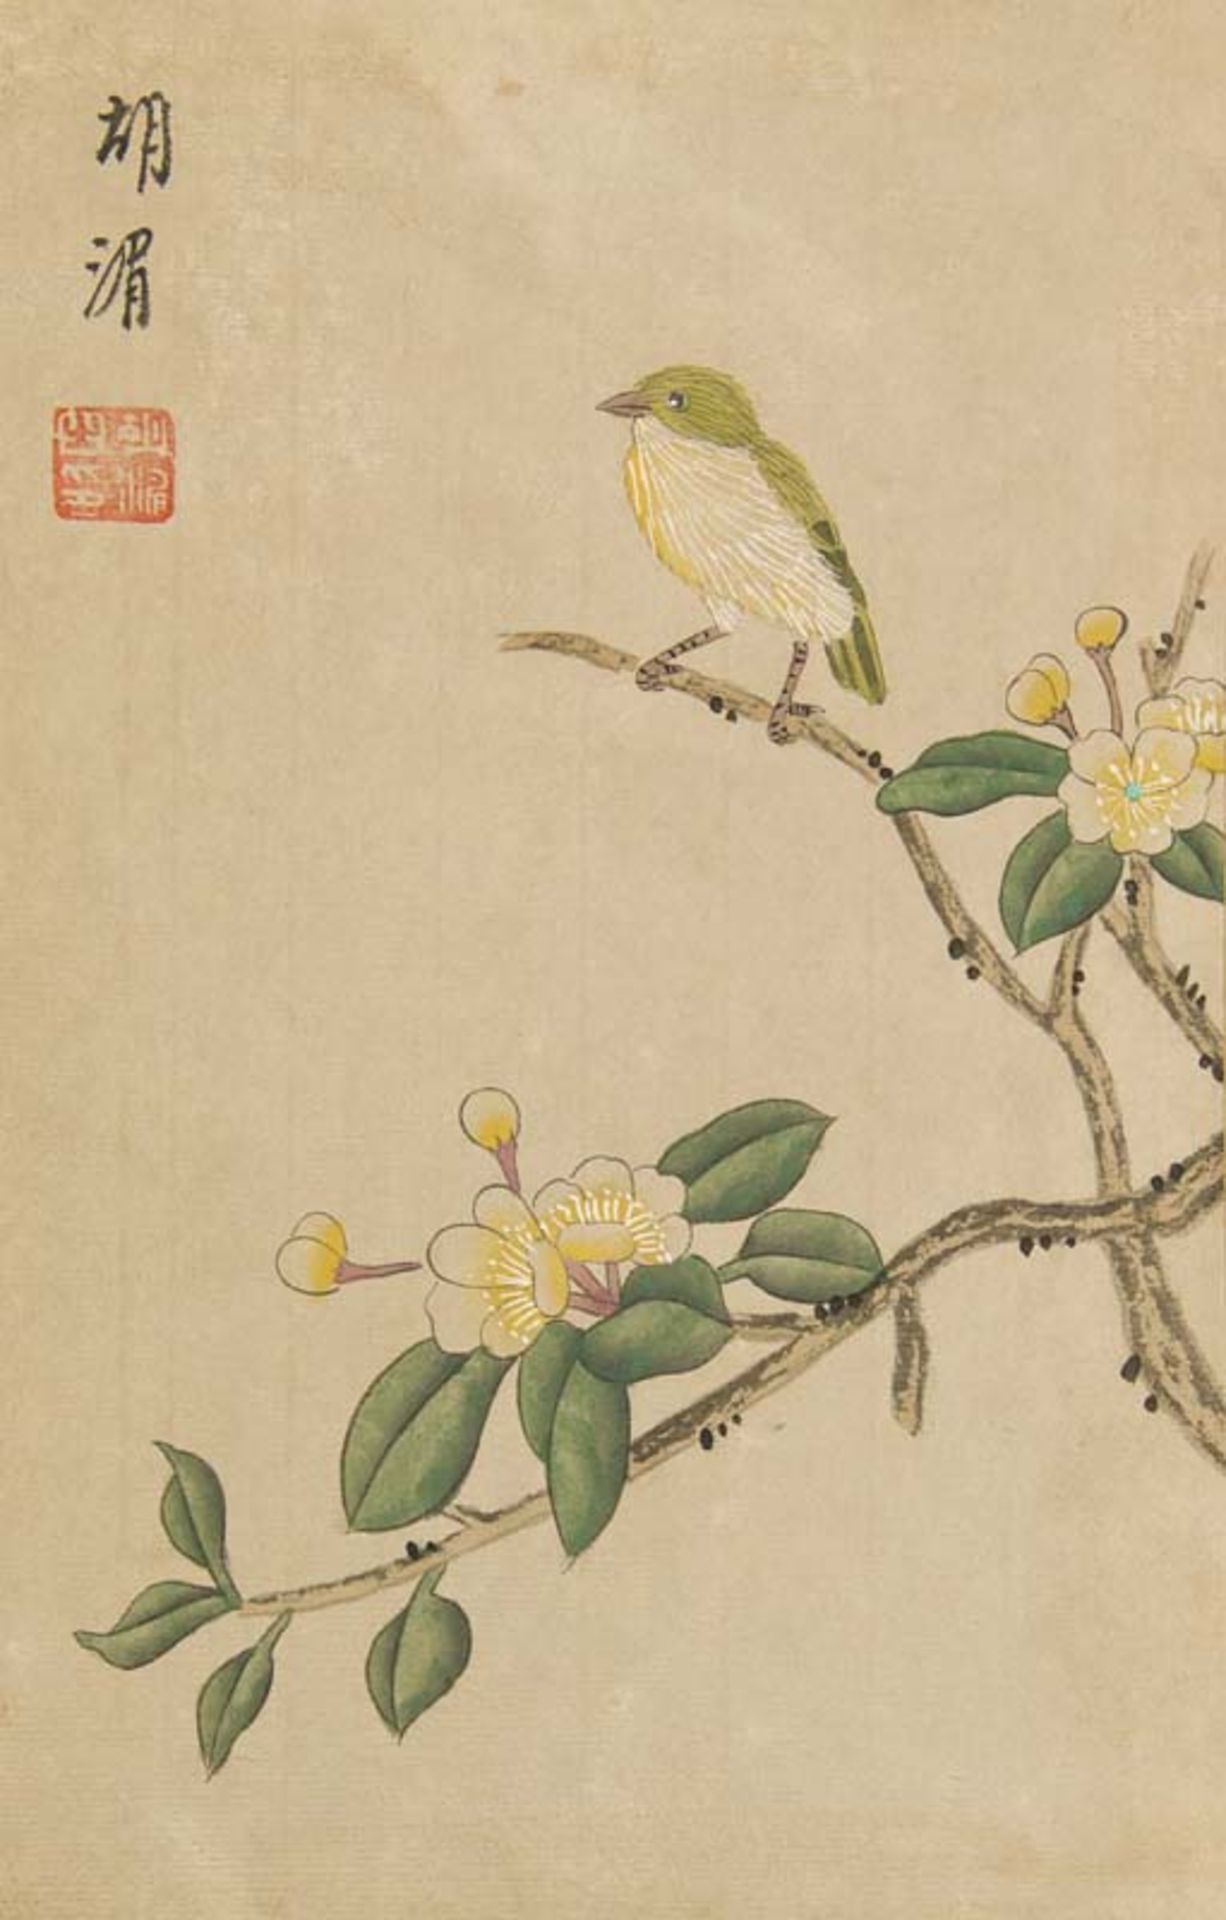 China - - (Nach) Mei, Hu. (Chin. Hu nio hua ce) Album der Blumen und Vögel. Mit 6 kalligraphischen